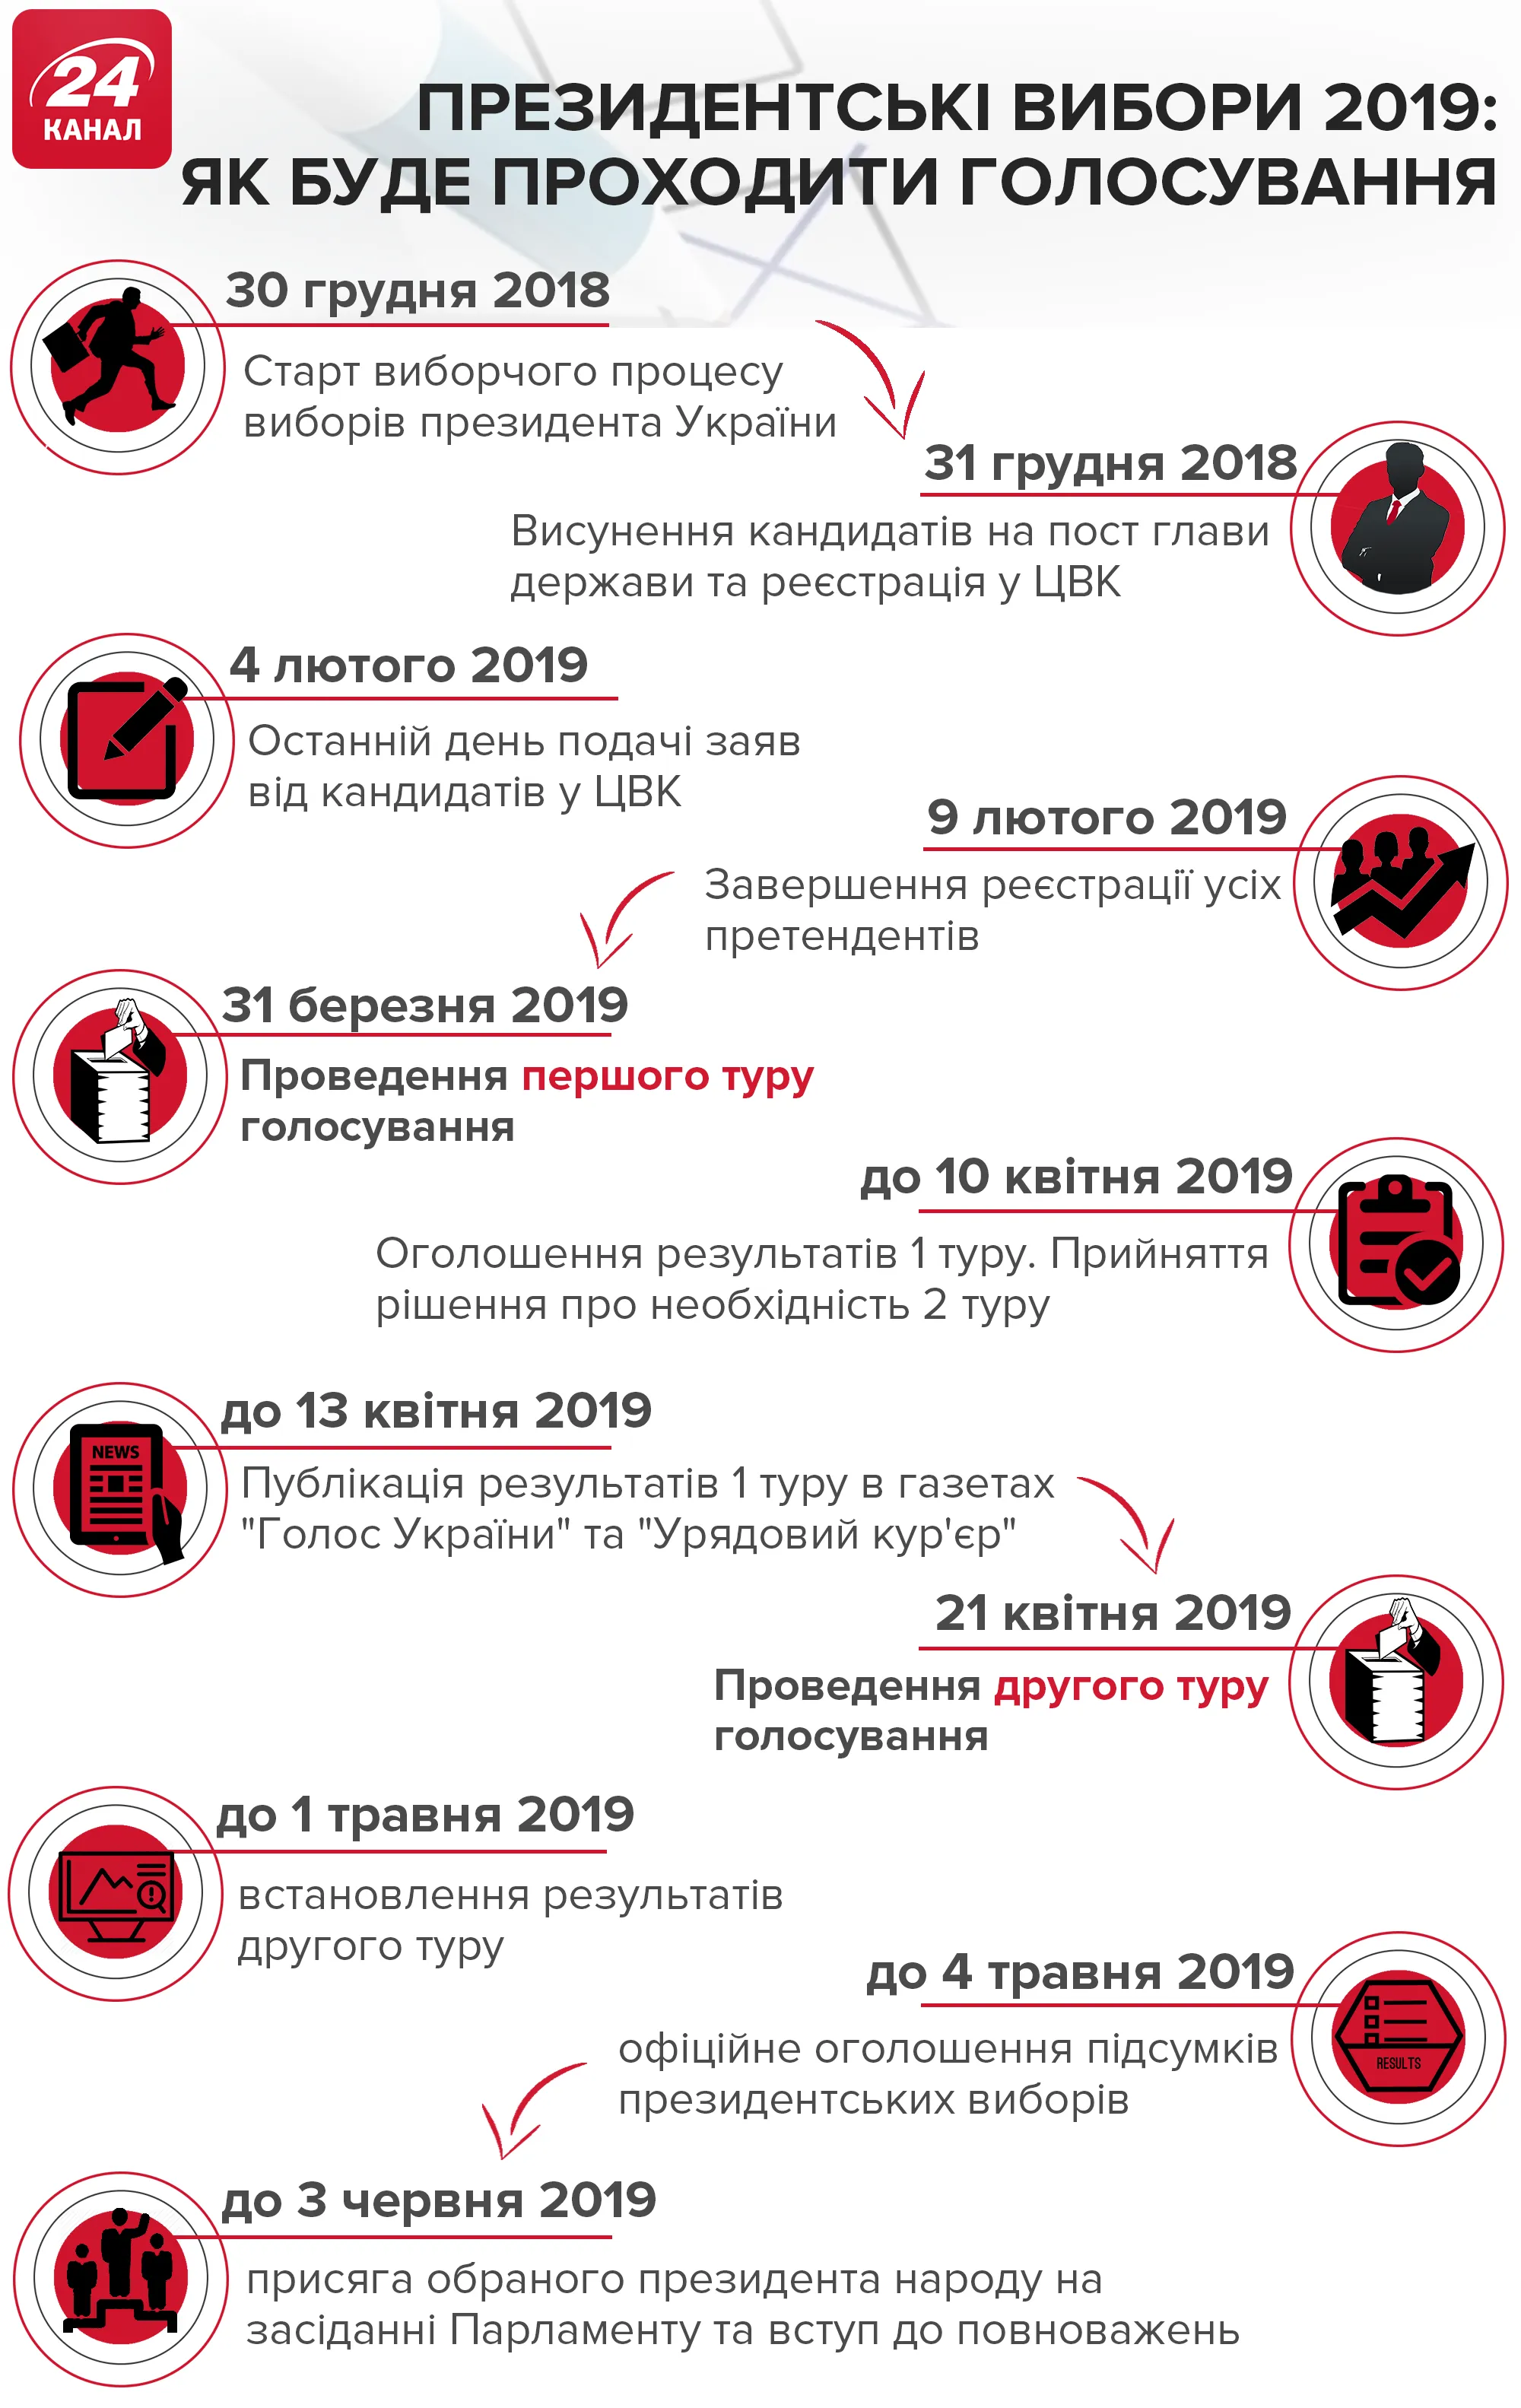 Головні дати виборчого процесу-2019 в Україні: інфографіка